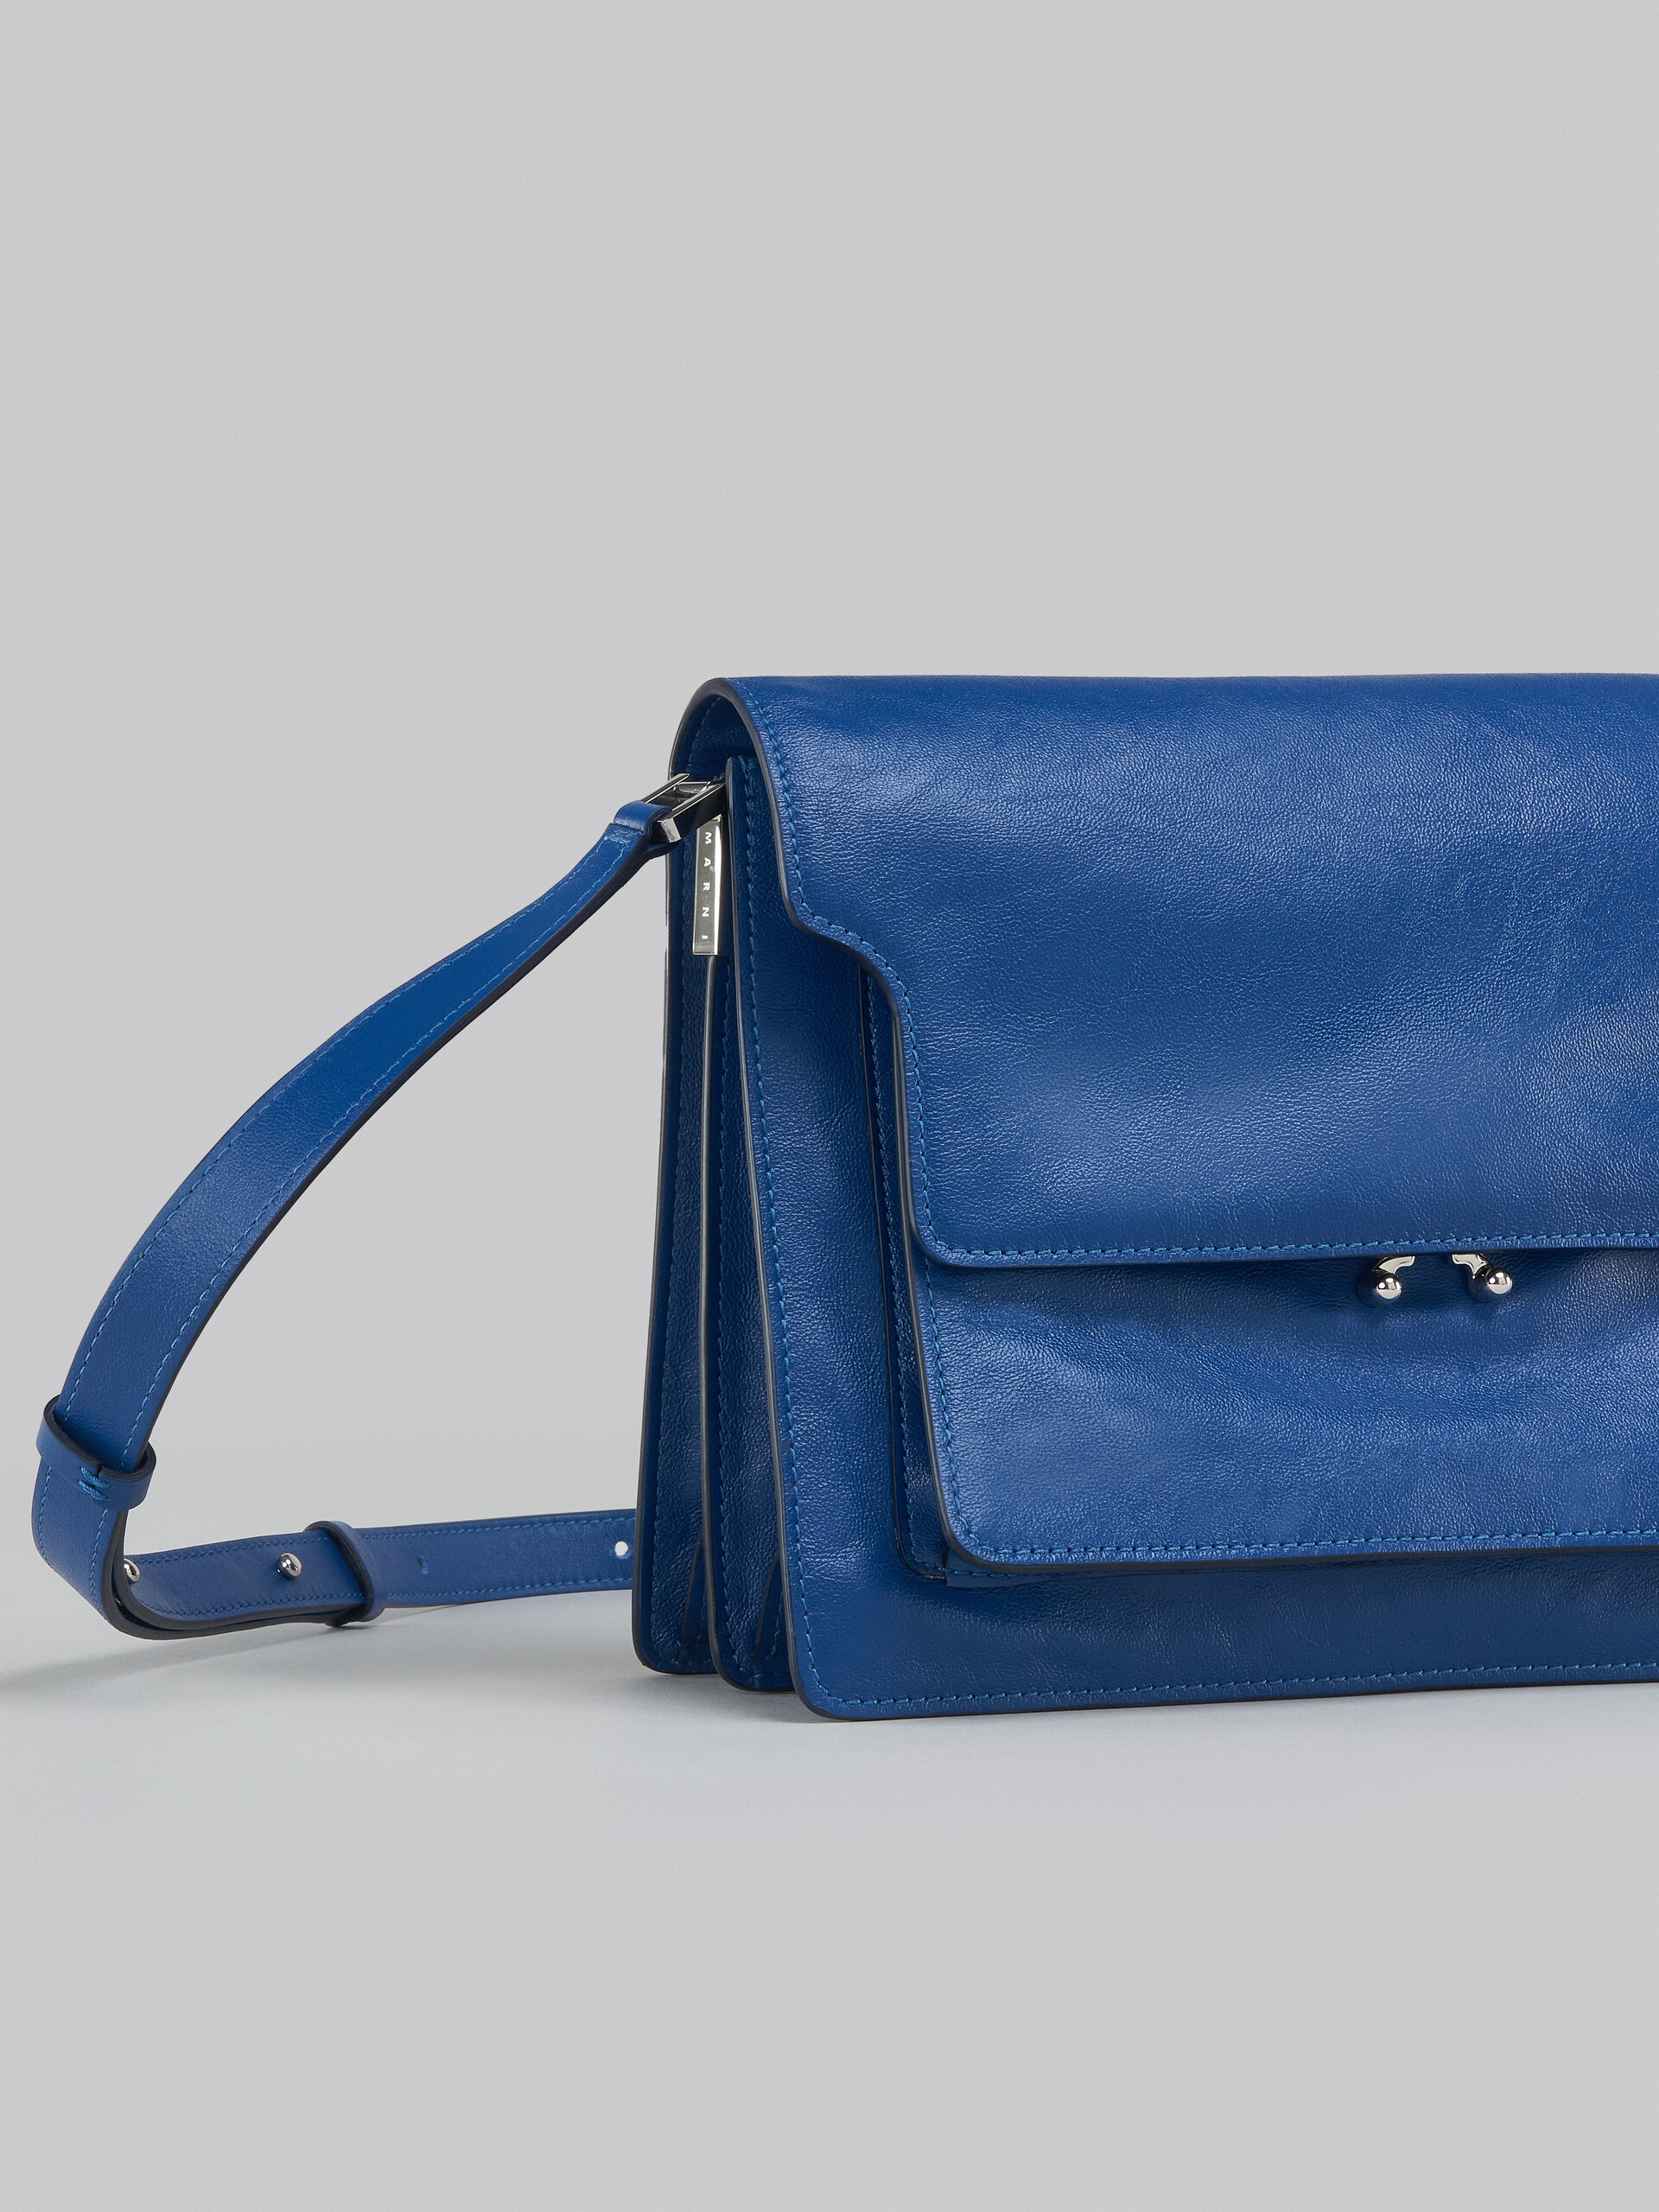 Trunk Soft Large Bag in blue leather - Shoulder Bag - Image 5